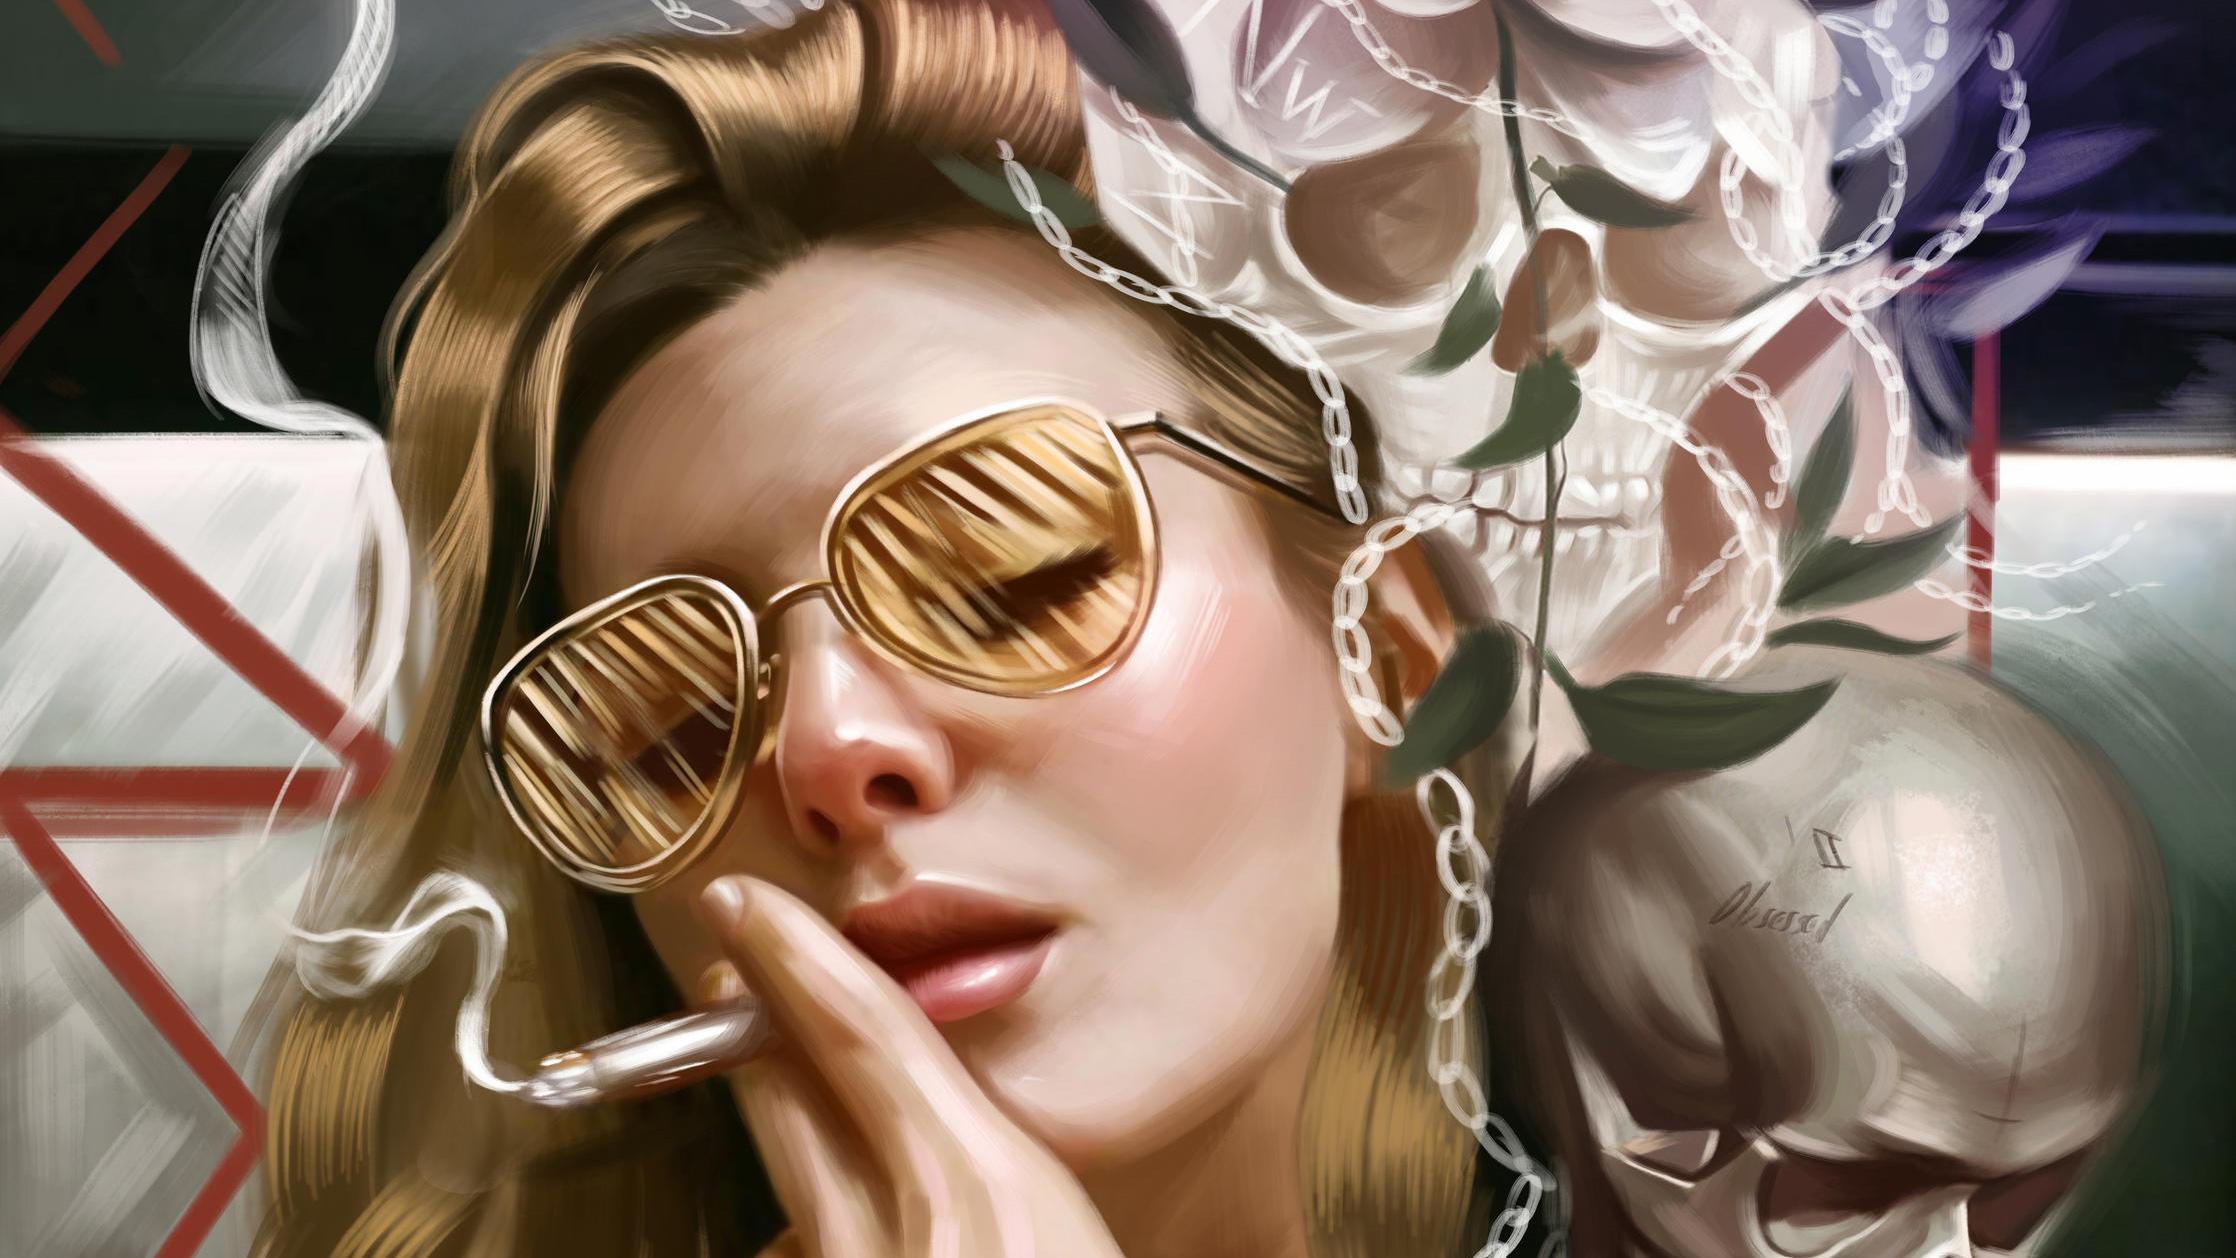 Girl Smoking Glasses, HD Fantasy Girls, 4k Wallpaper, Image